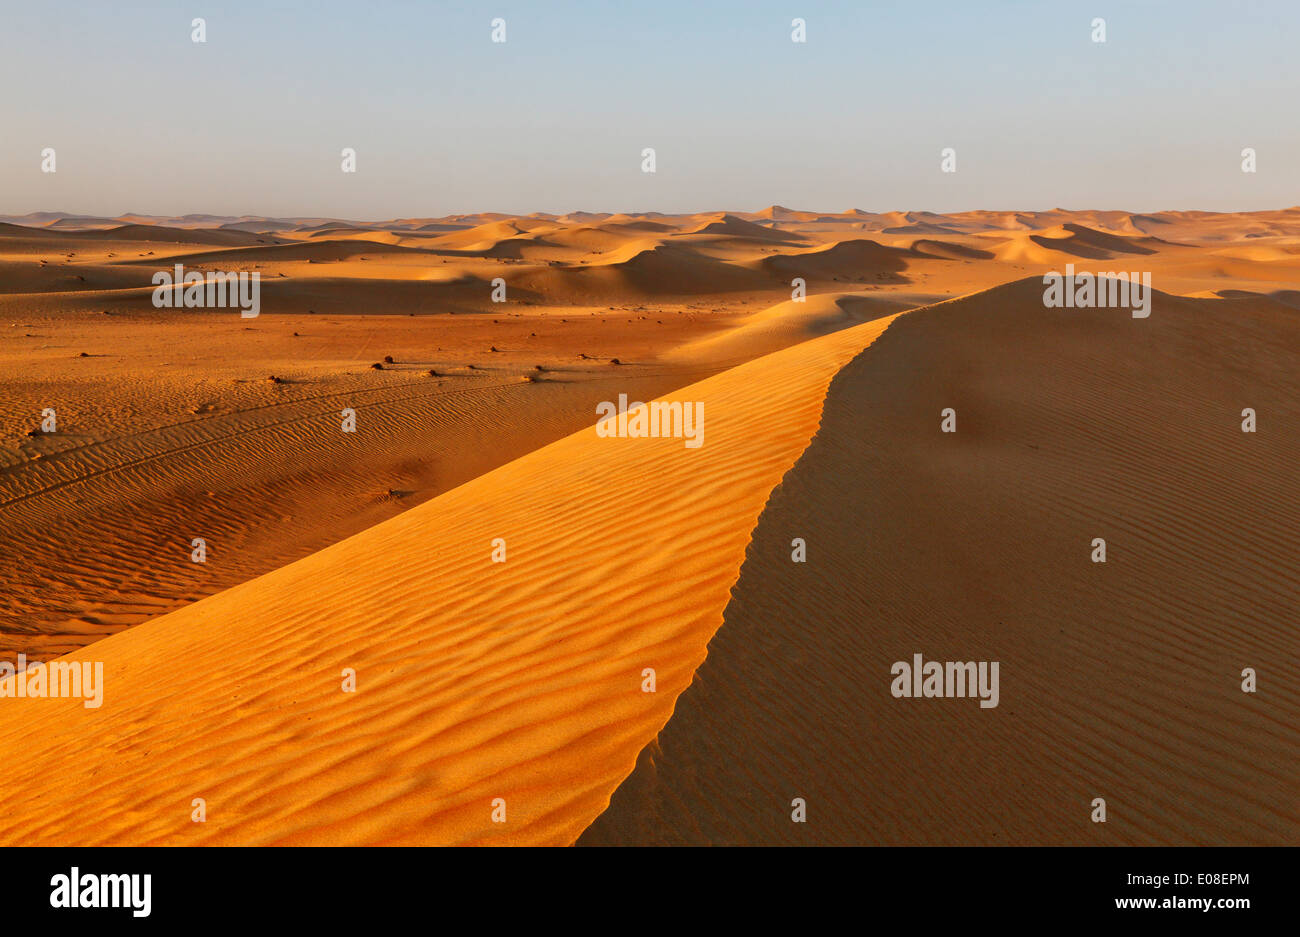 Paisaje de dunas de arena en el desierto de Arabia. Foto de stock